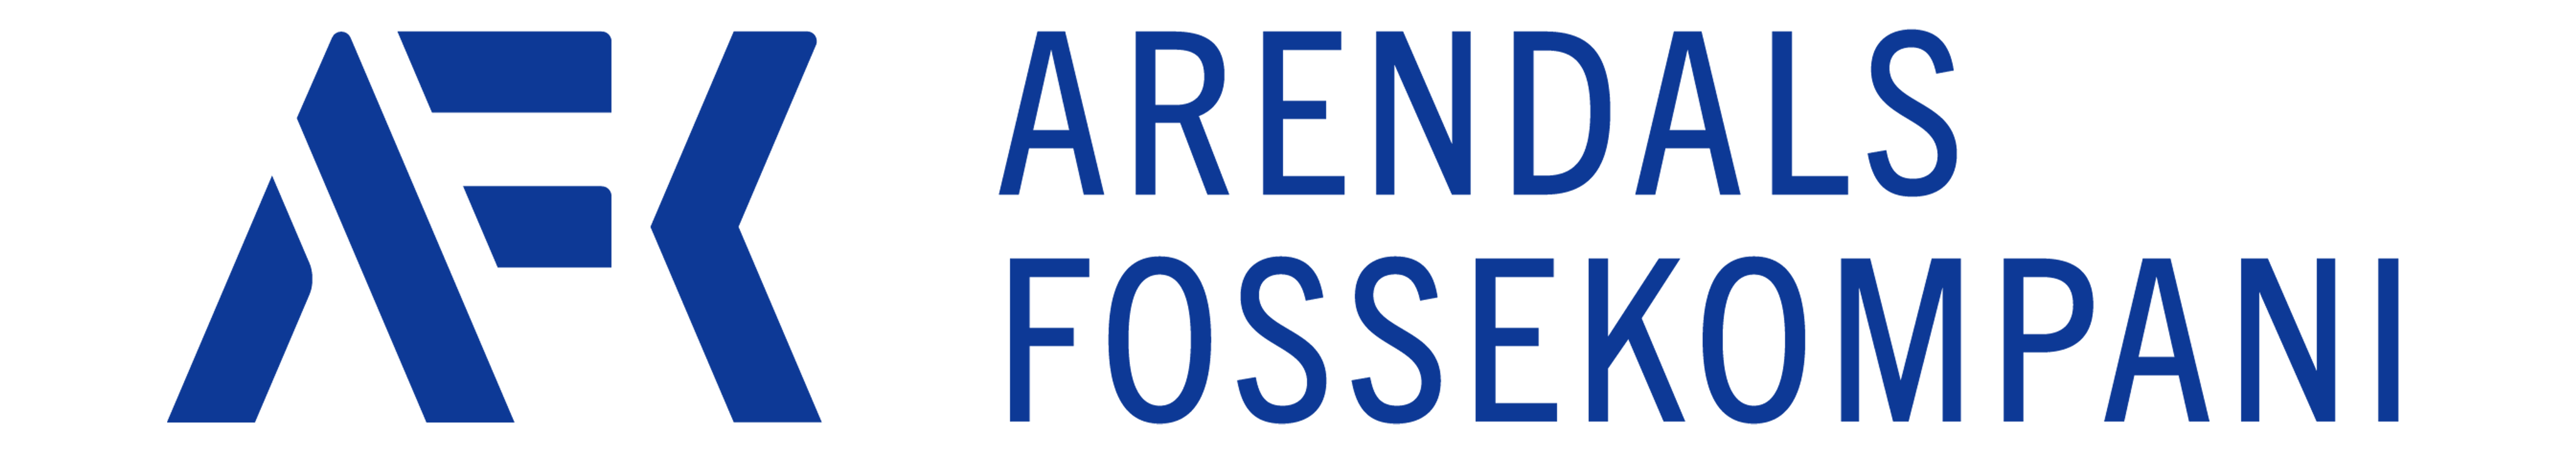 AFK_logo